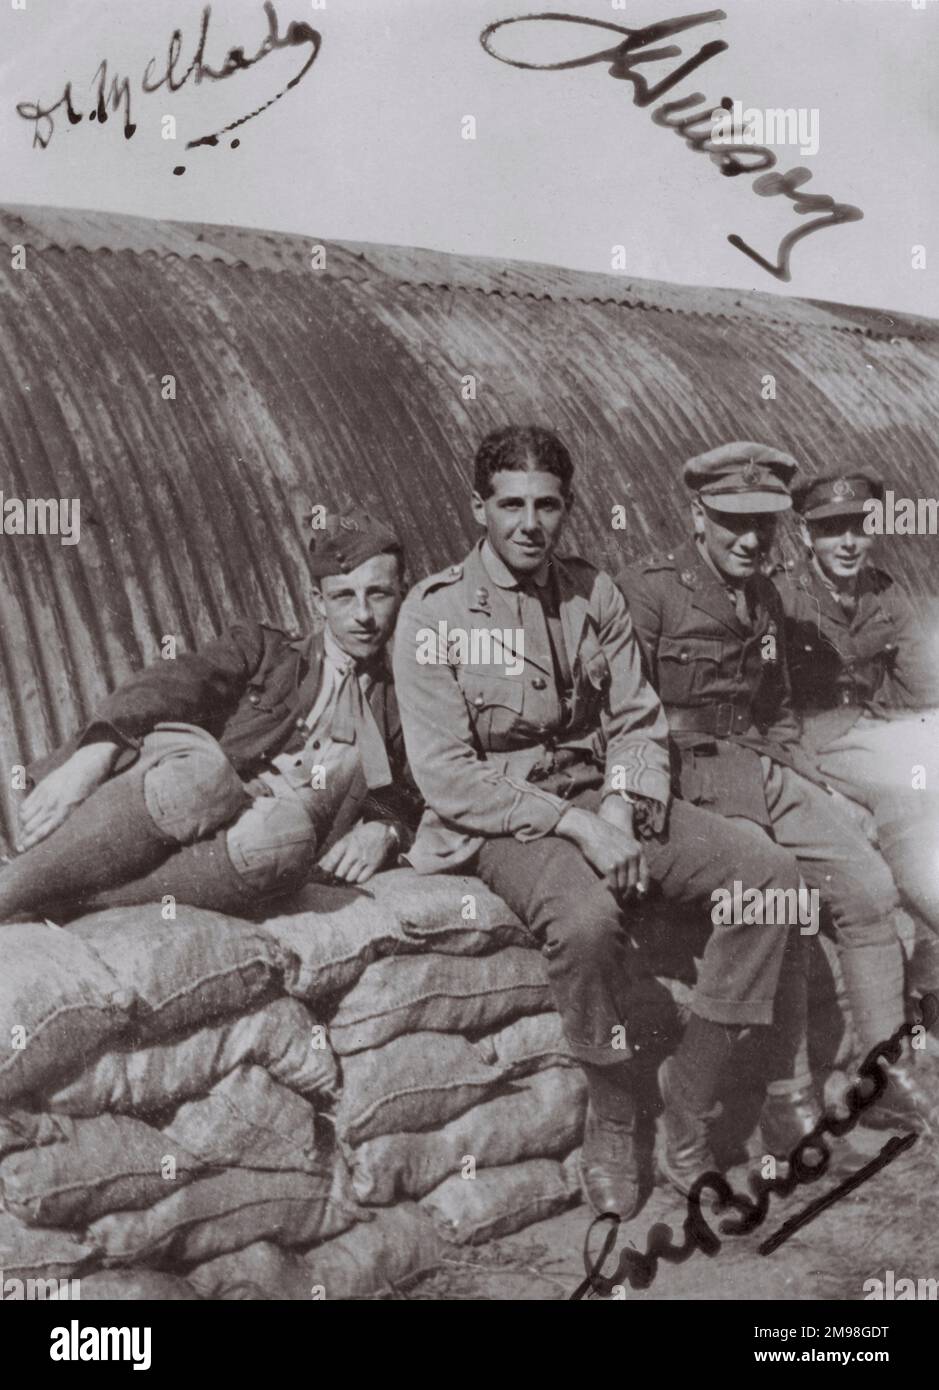 Vier Crewmitglieder des Royal Flying Corps entspannen sich auf einem Haufen Säcke vor einer Welleisenhütte, irgendwo in Nordfrankreich während des Ersten Weltkriegs. Drei von ihnen haben ihre Namen auf dem Foto unterschrieben. Stockfoto